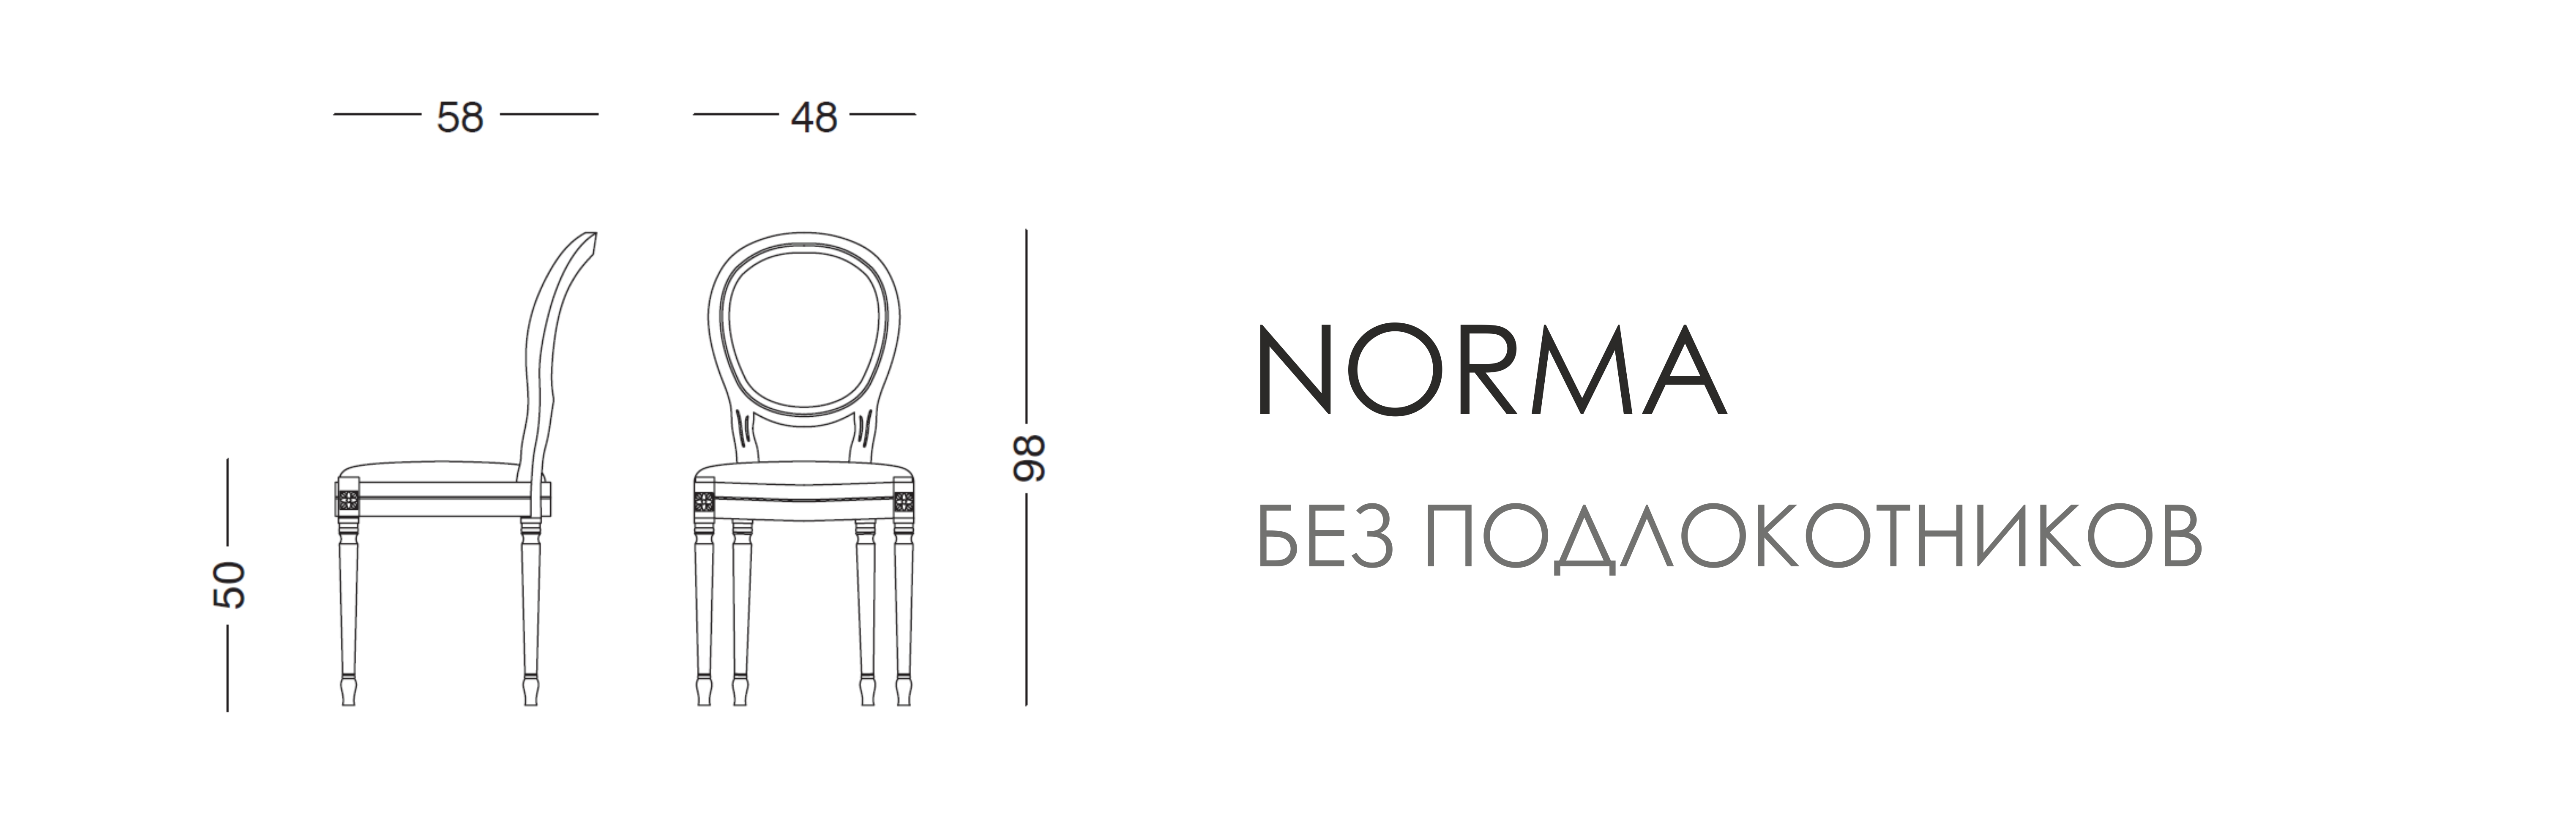 Стул - Norma без подлокотников